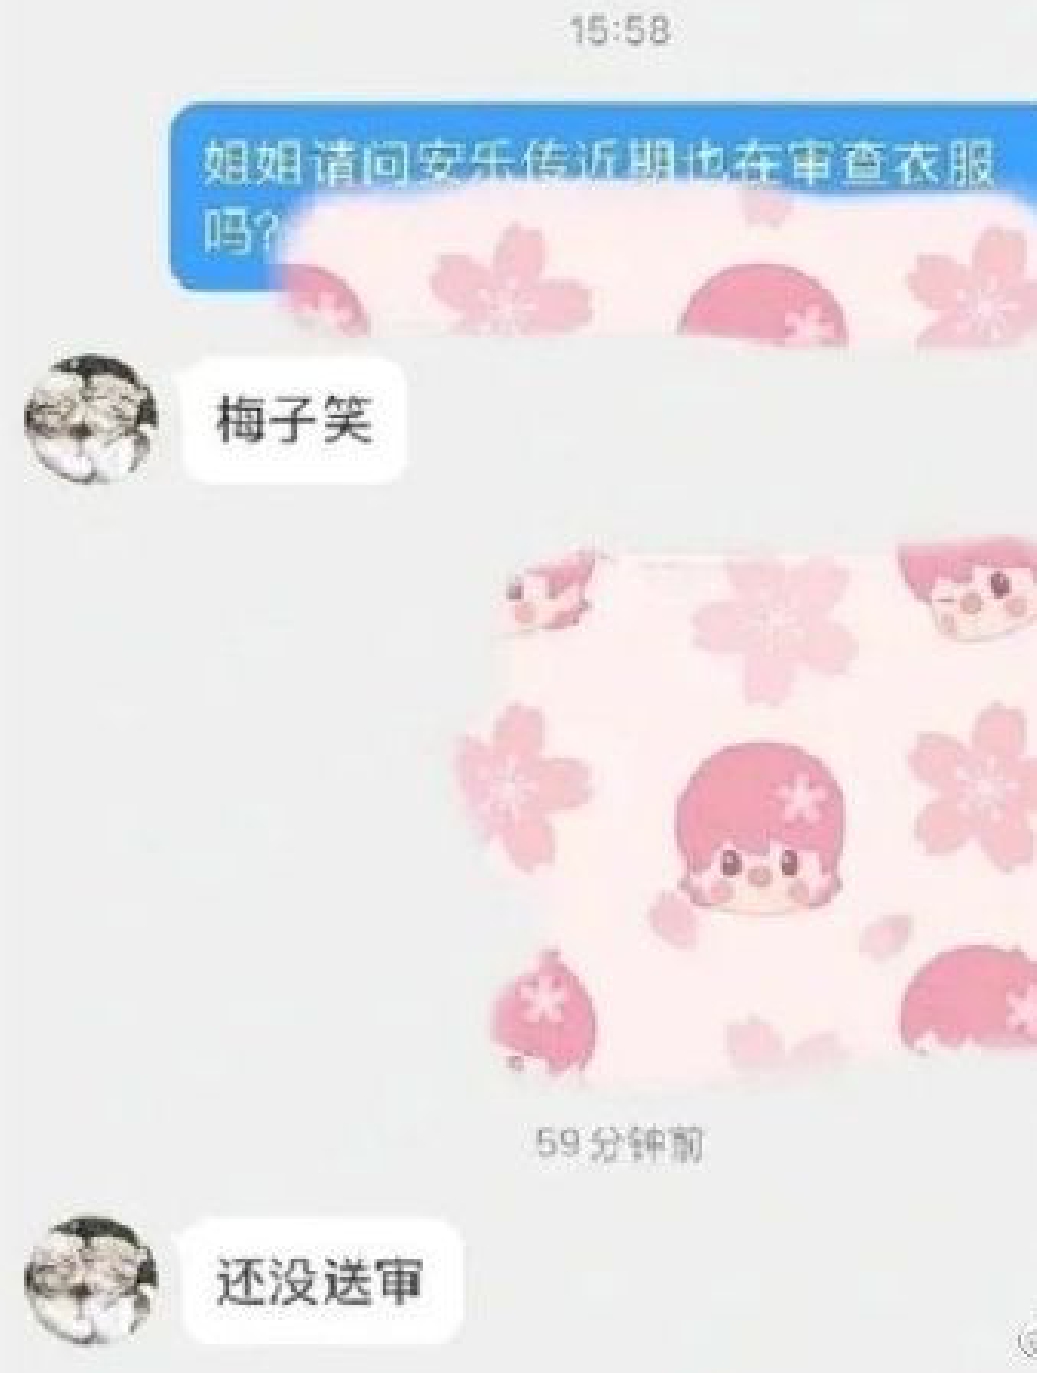 网曝制片人透露迪丽热巴龚俊《安乐传》未送审